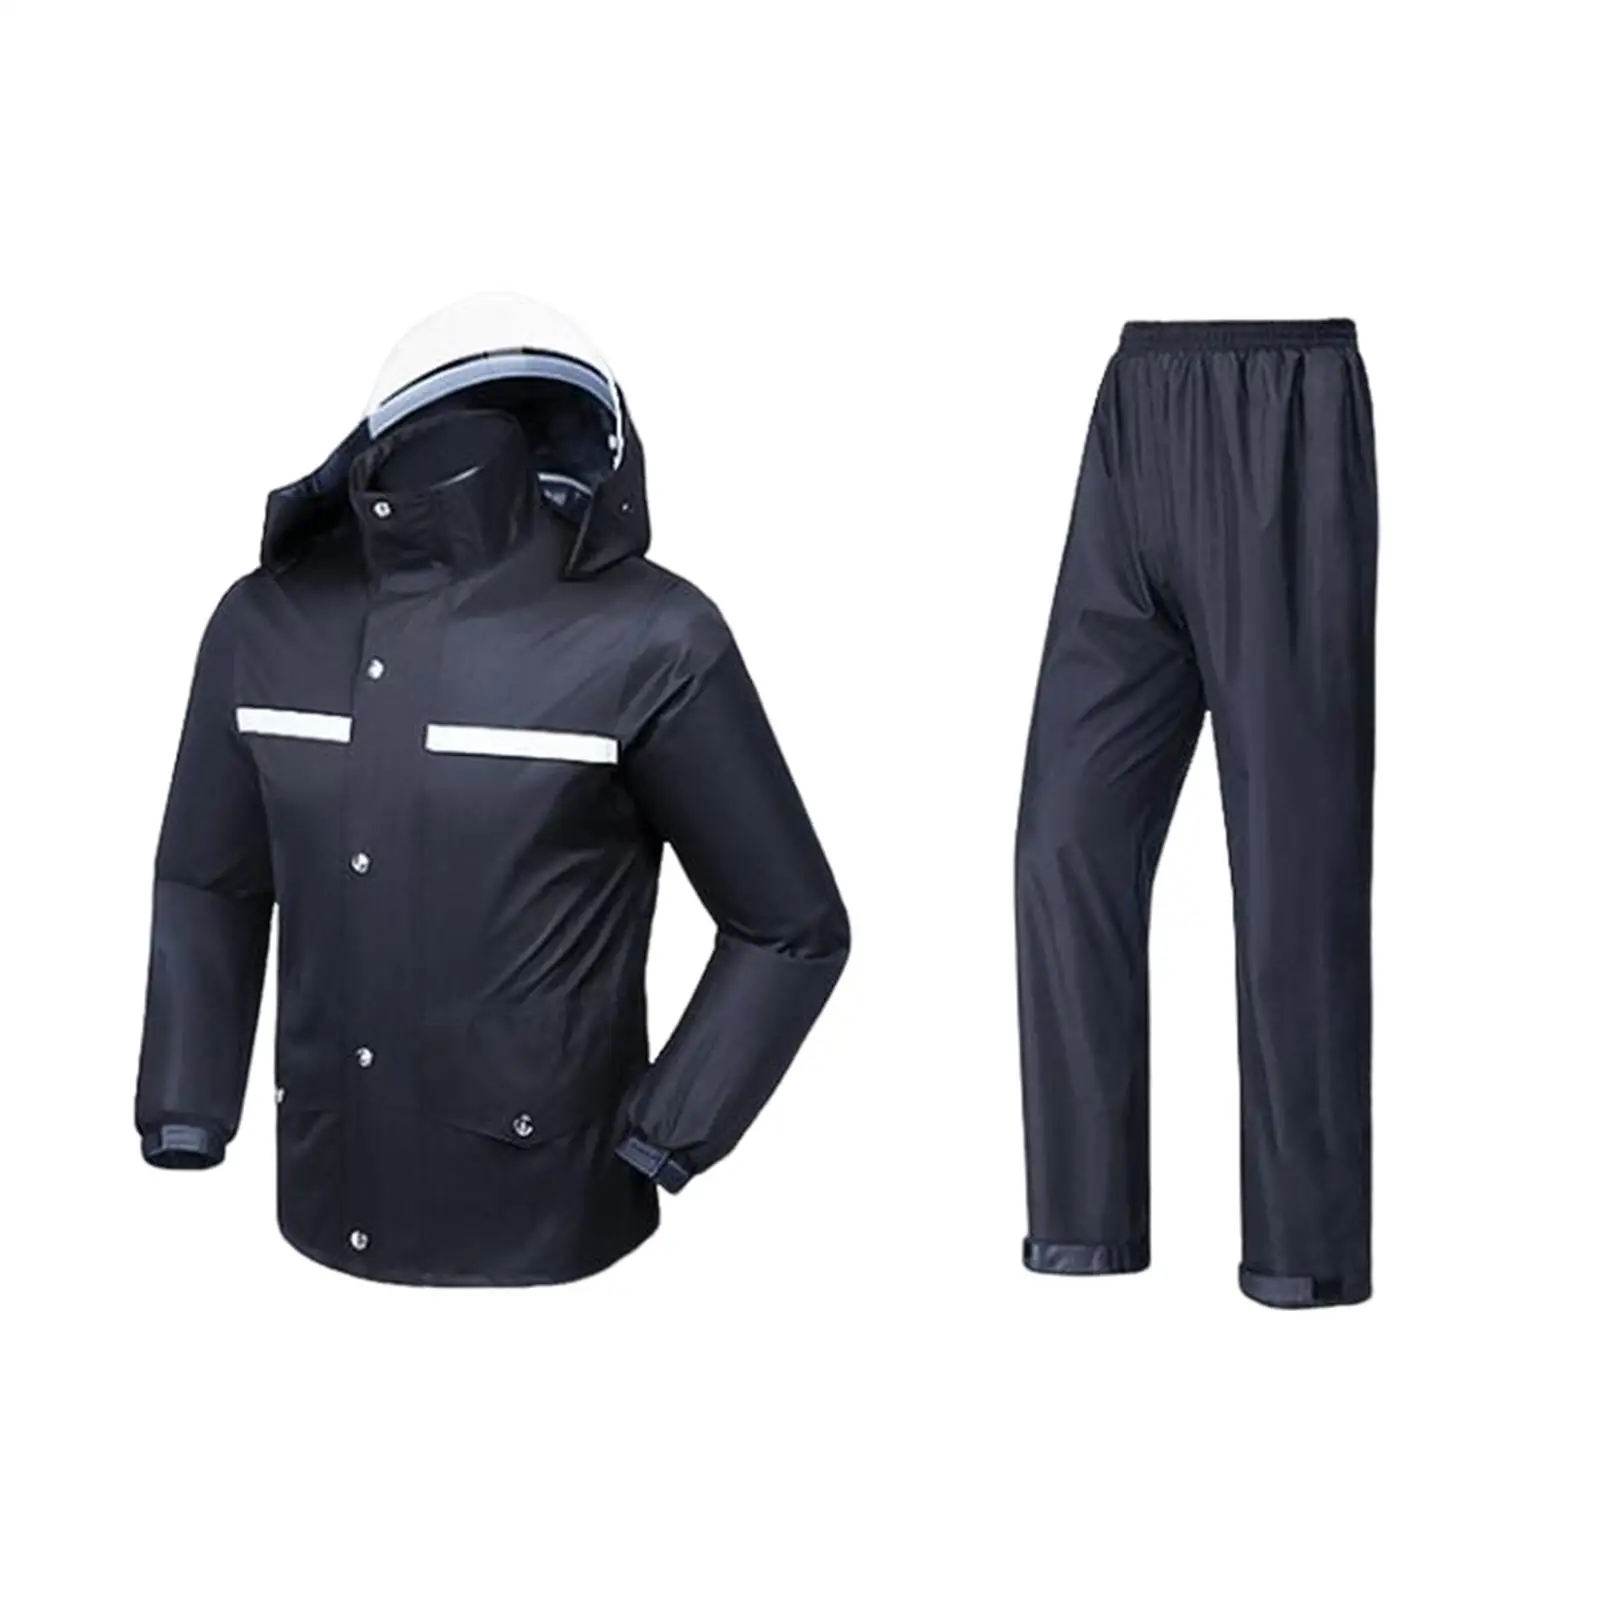 Rain Suit Jacket and Trouser Suit Hooded Breathable Durable Elastic Machine Wash Rain Gear Detachable Brim for Men and Women